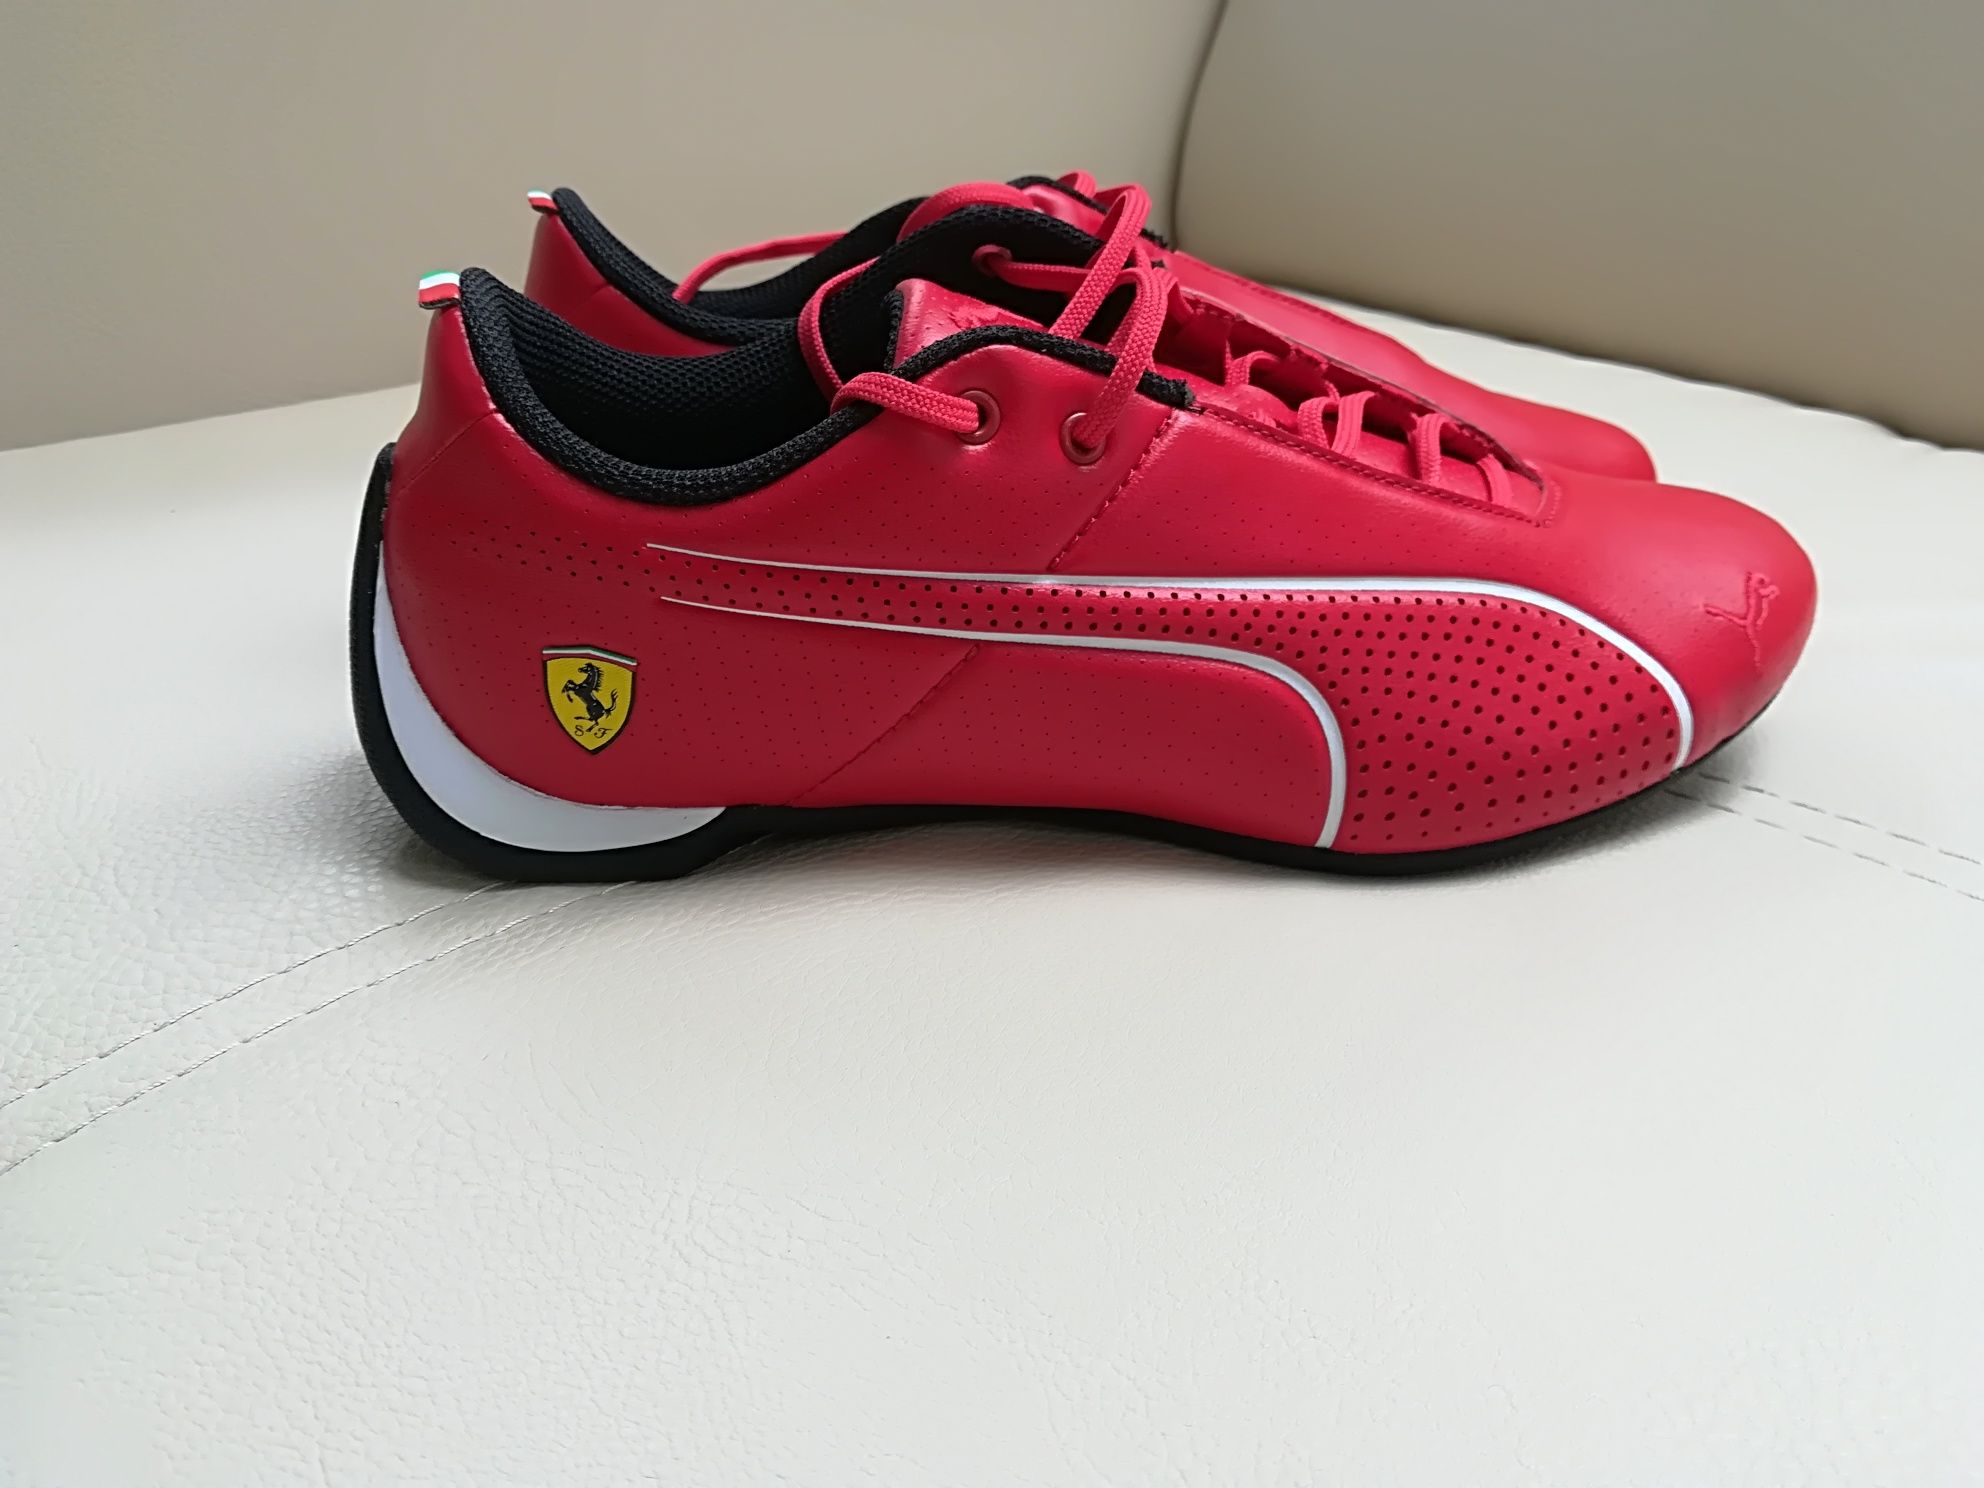 Adidasi Puma Ferrari. Future Cat